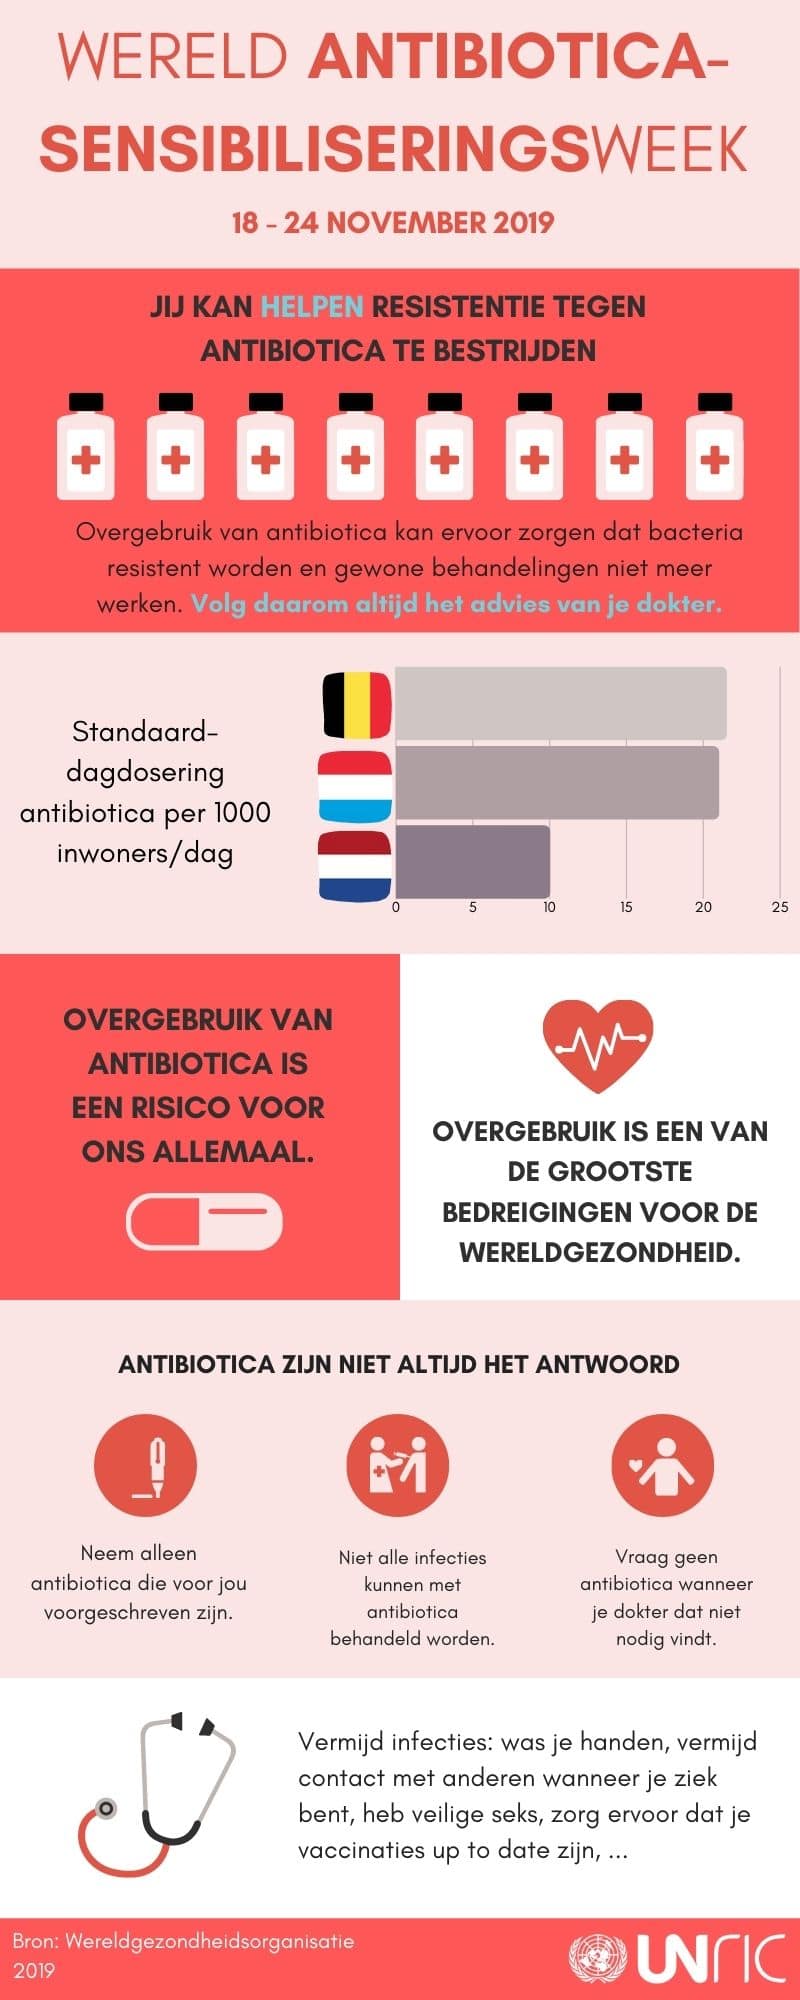 Antibiotica sensibiliseringsweek